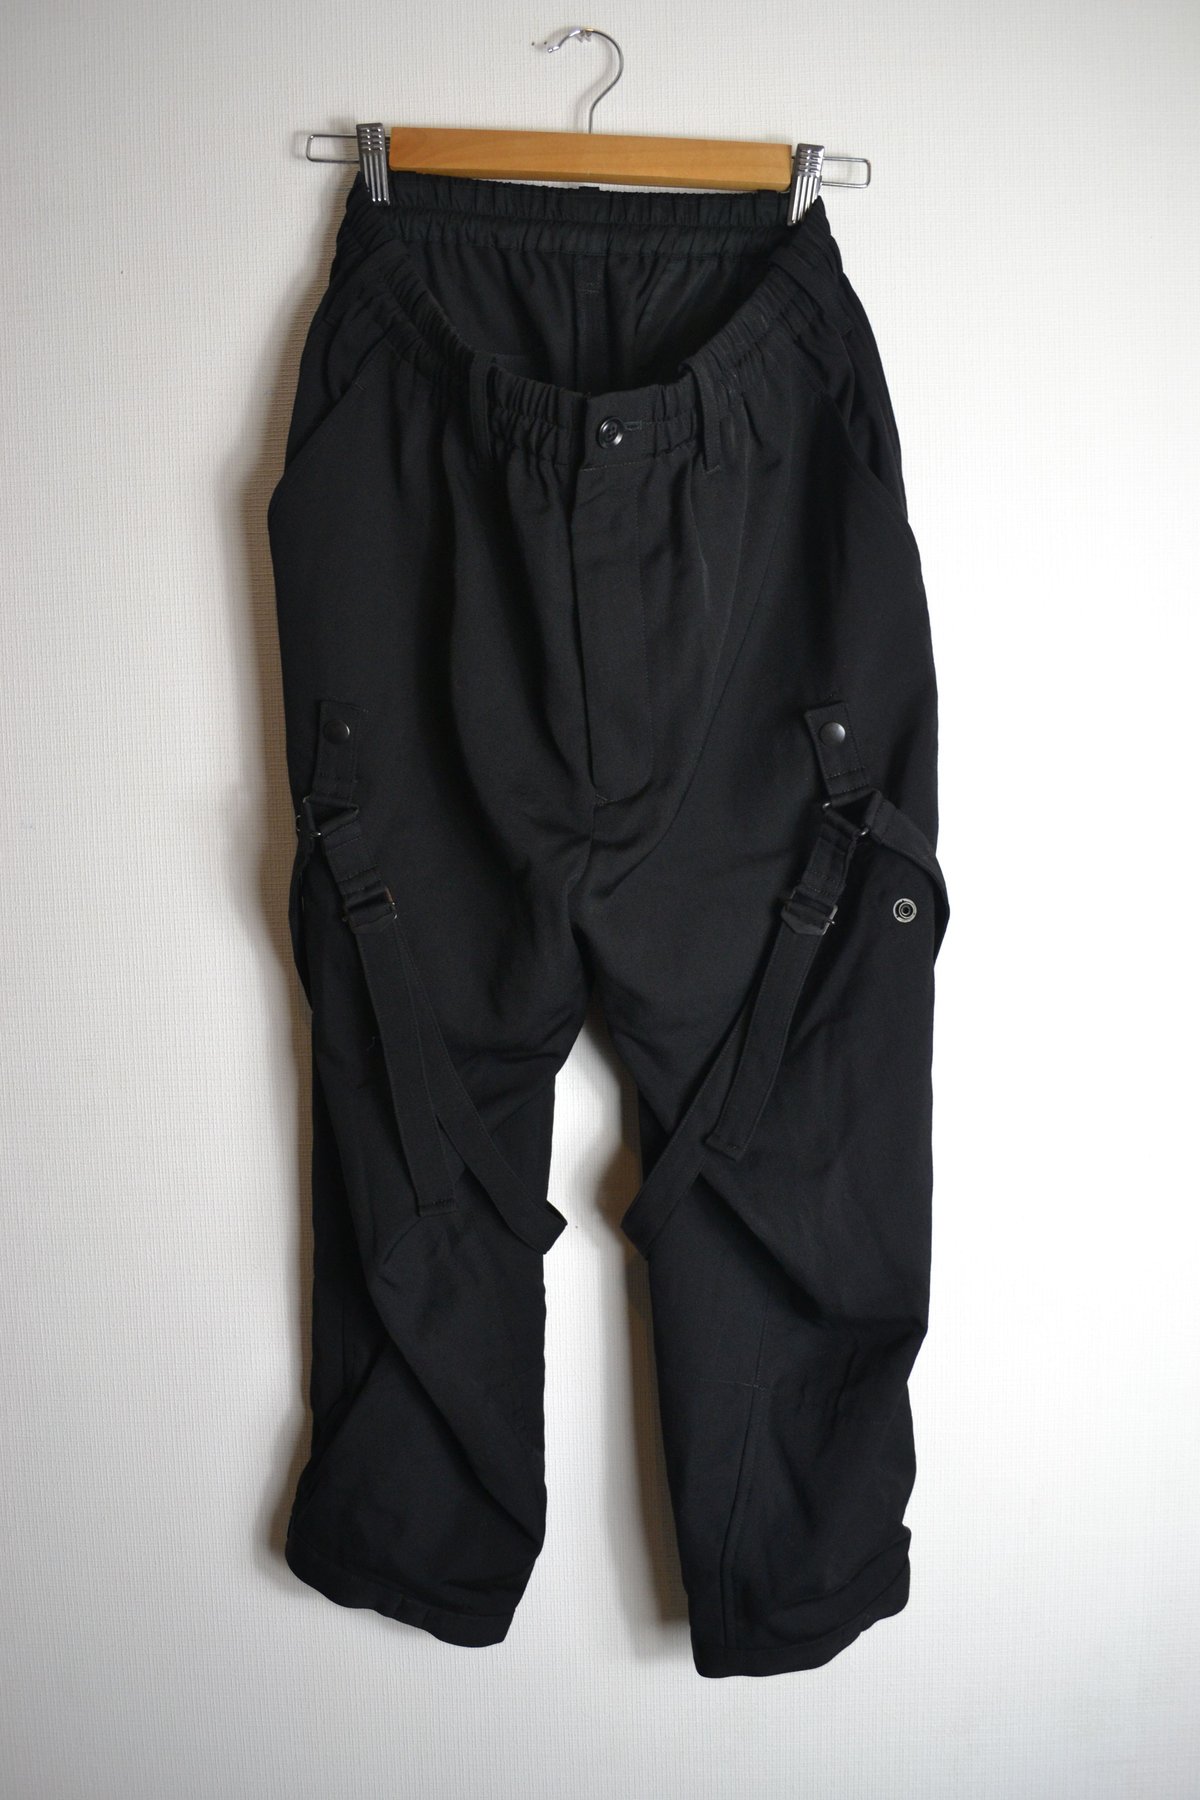 Yohji Yamamoto AW16 Bondage Pants - HR-P43-100